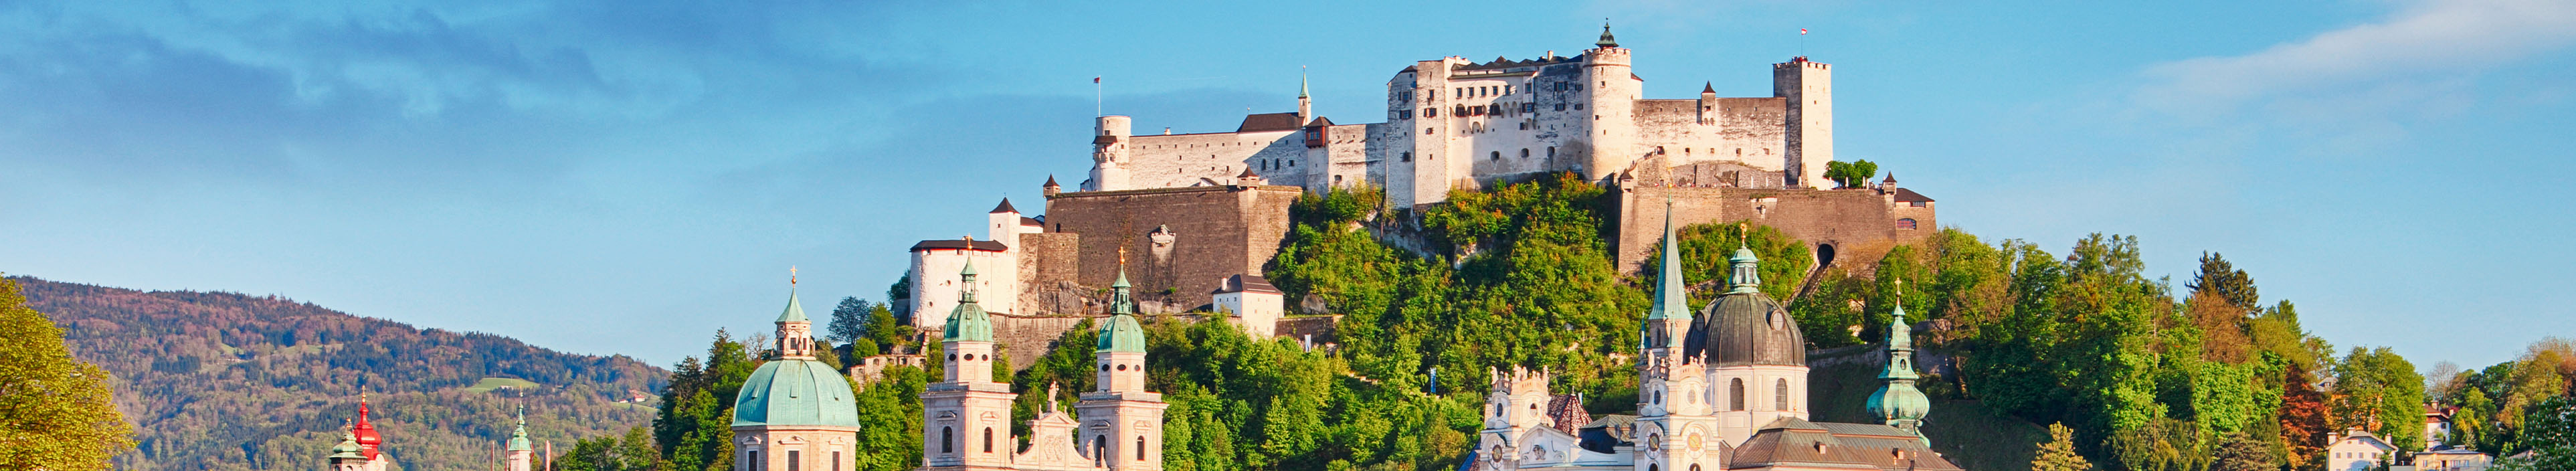 Festung in Salzburg, Österreich